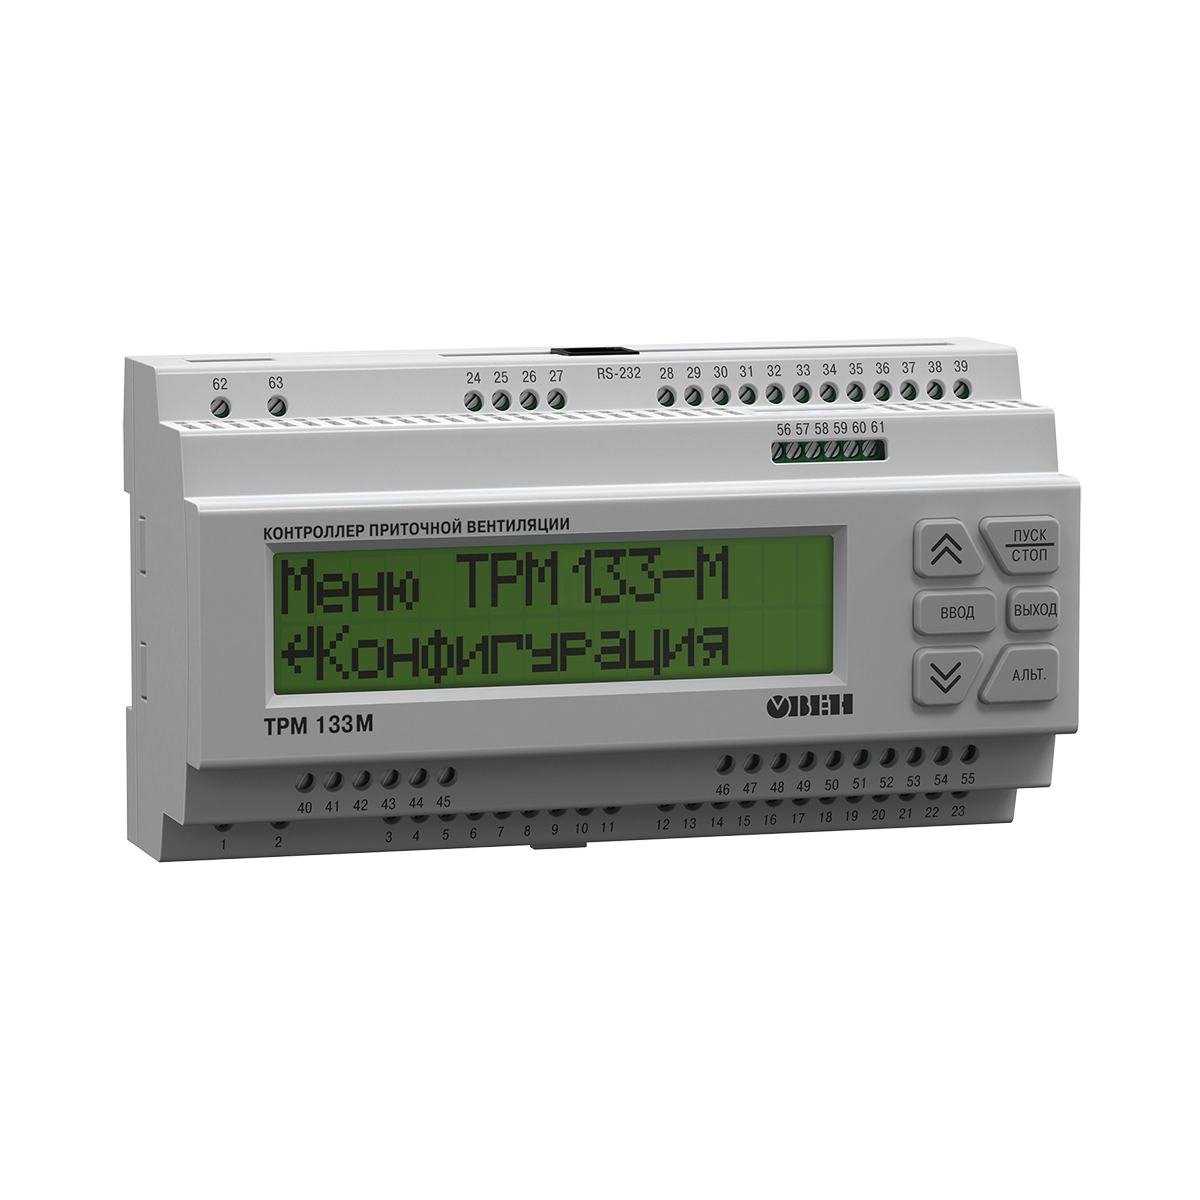 ТРМ133М Контроллер для приточно-вытяжной вентиляции